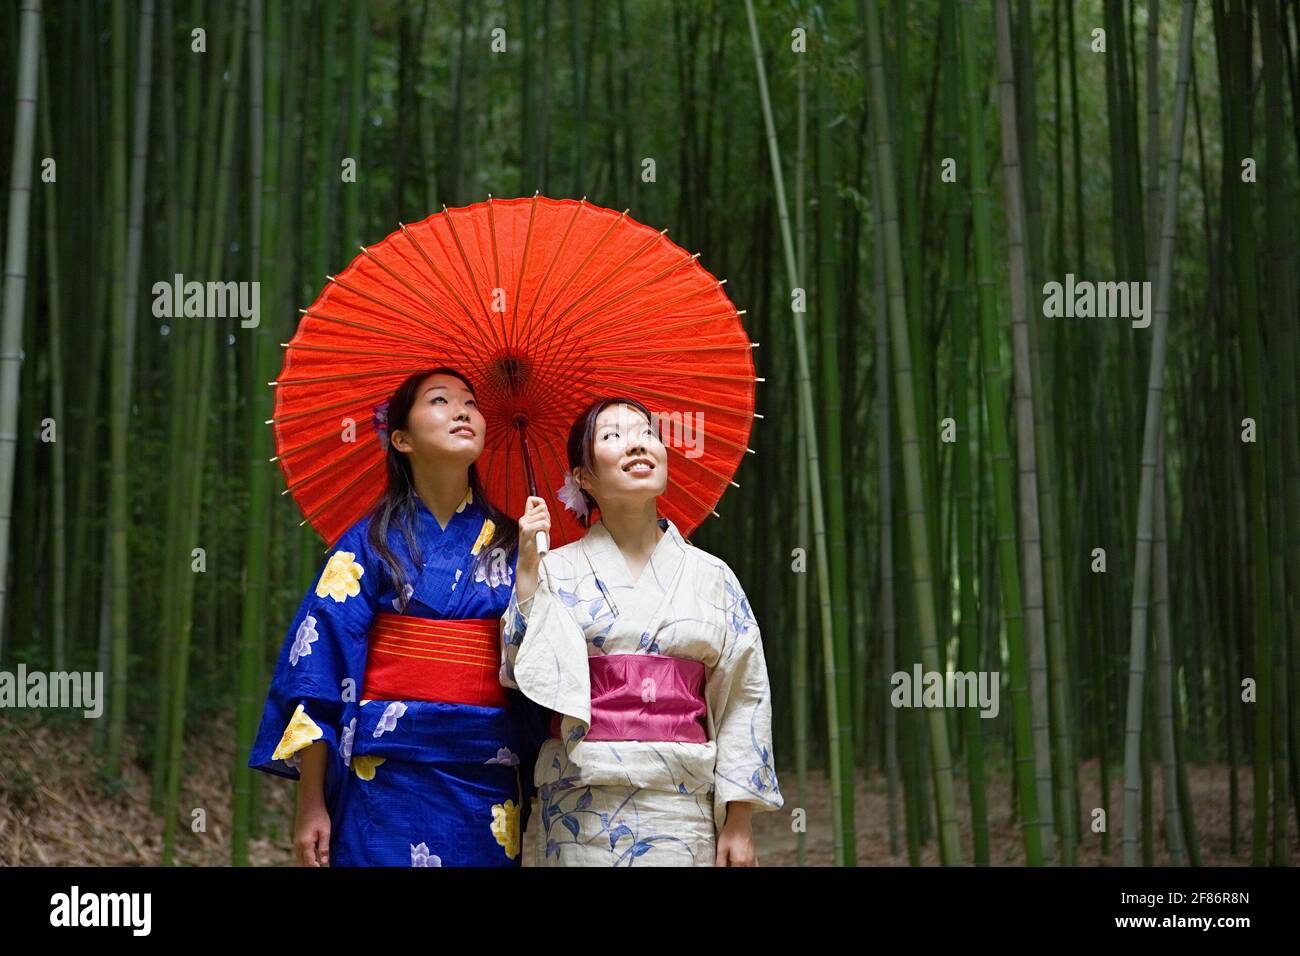 Schöne junge japanische Frauen in Kimonos mit Sonnenschirm in Bambus Wald Stockfoto